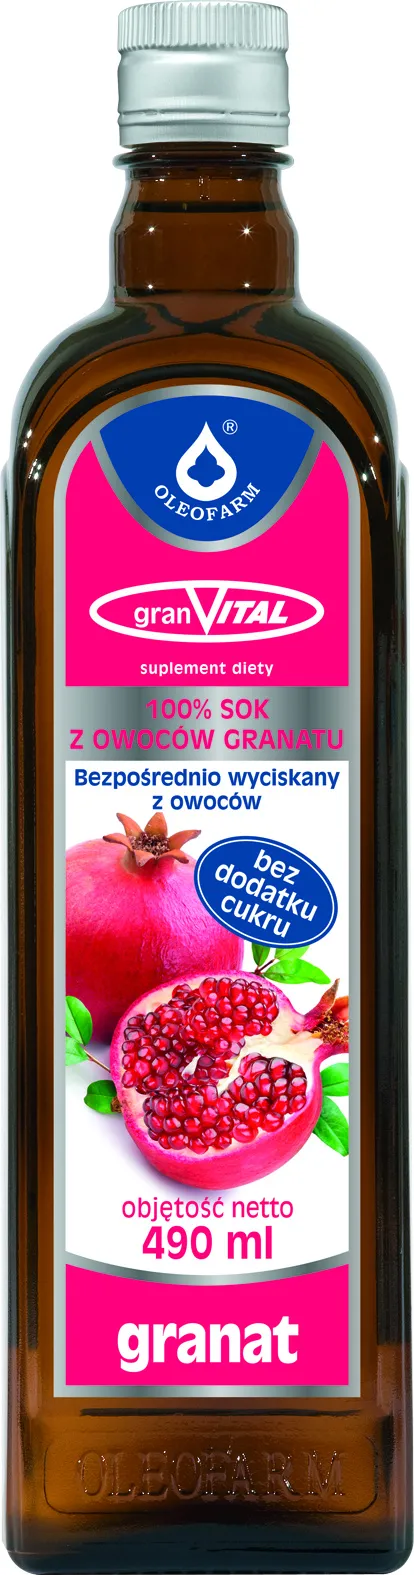 Granvital, sok z owoców granatu, suplement diety, 490 ml